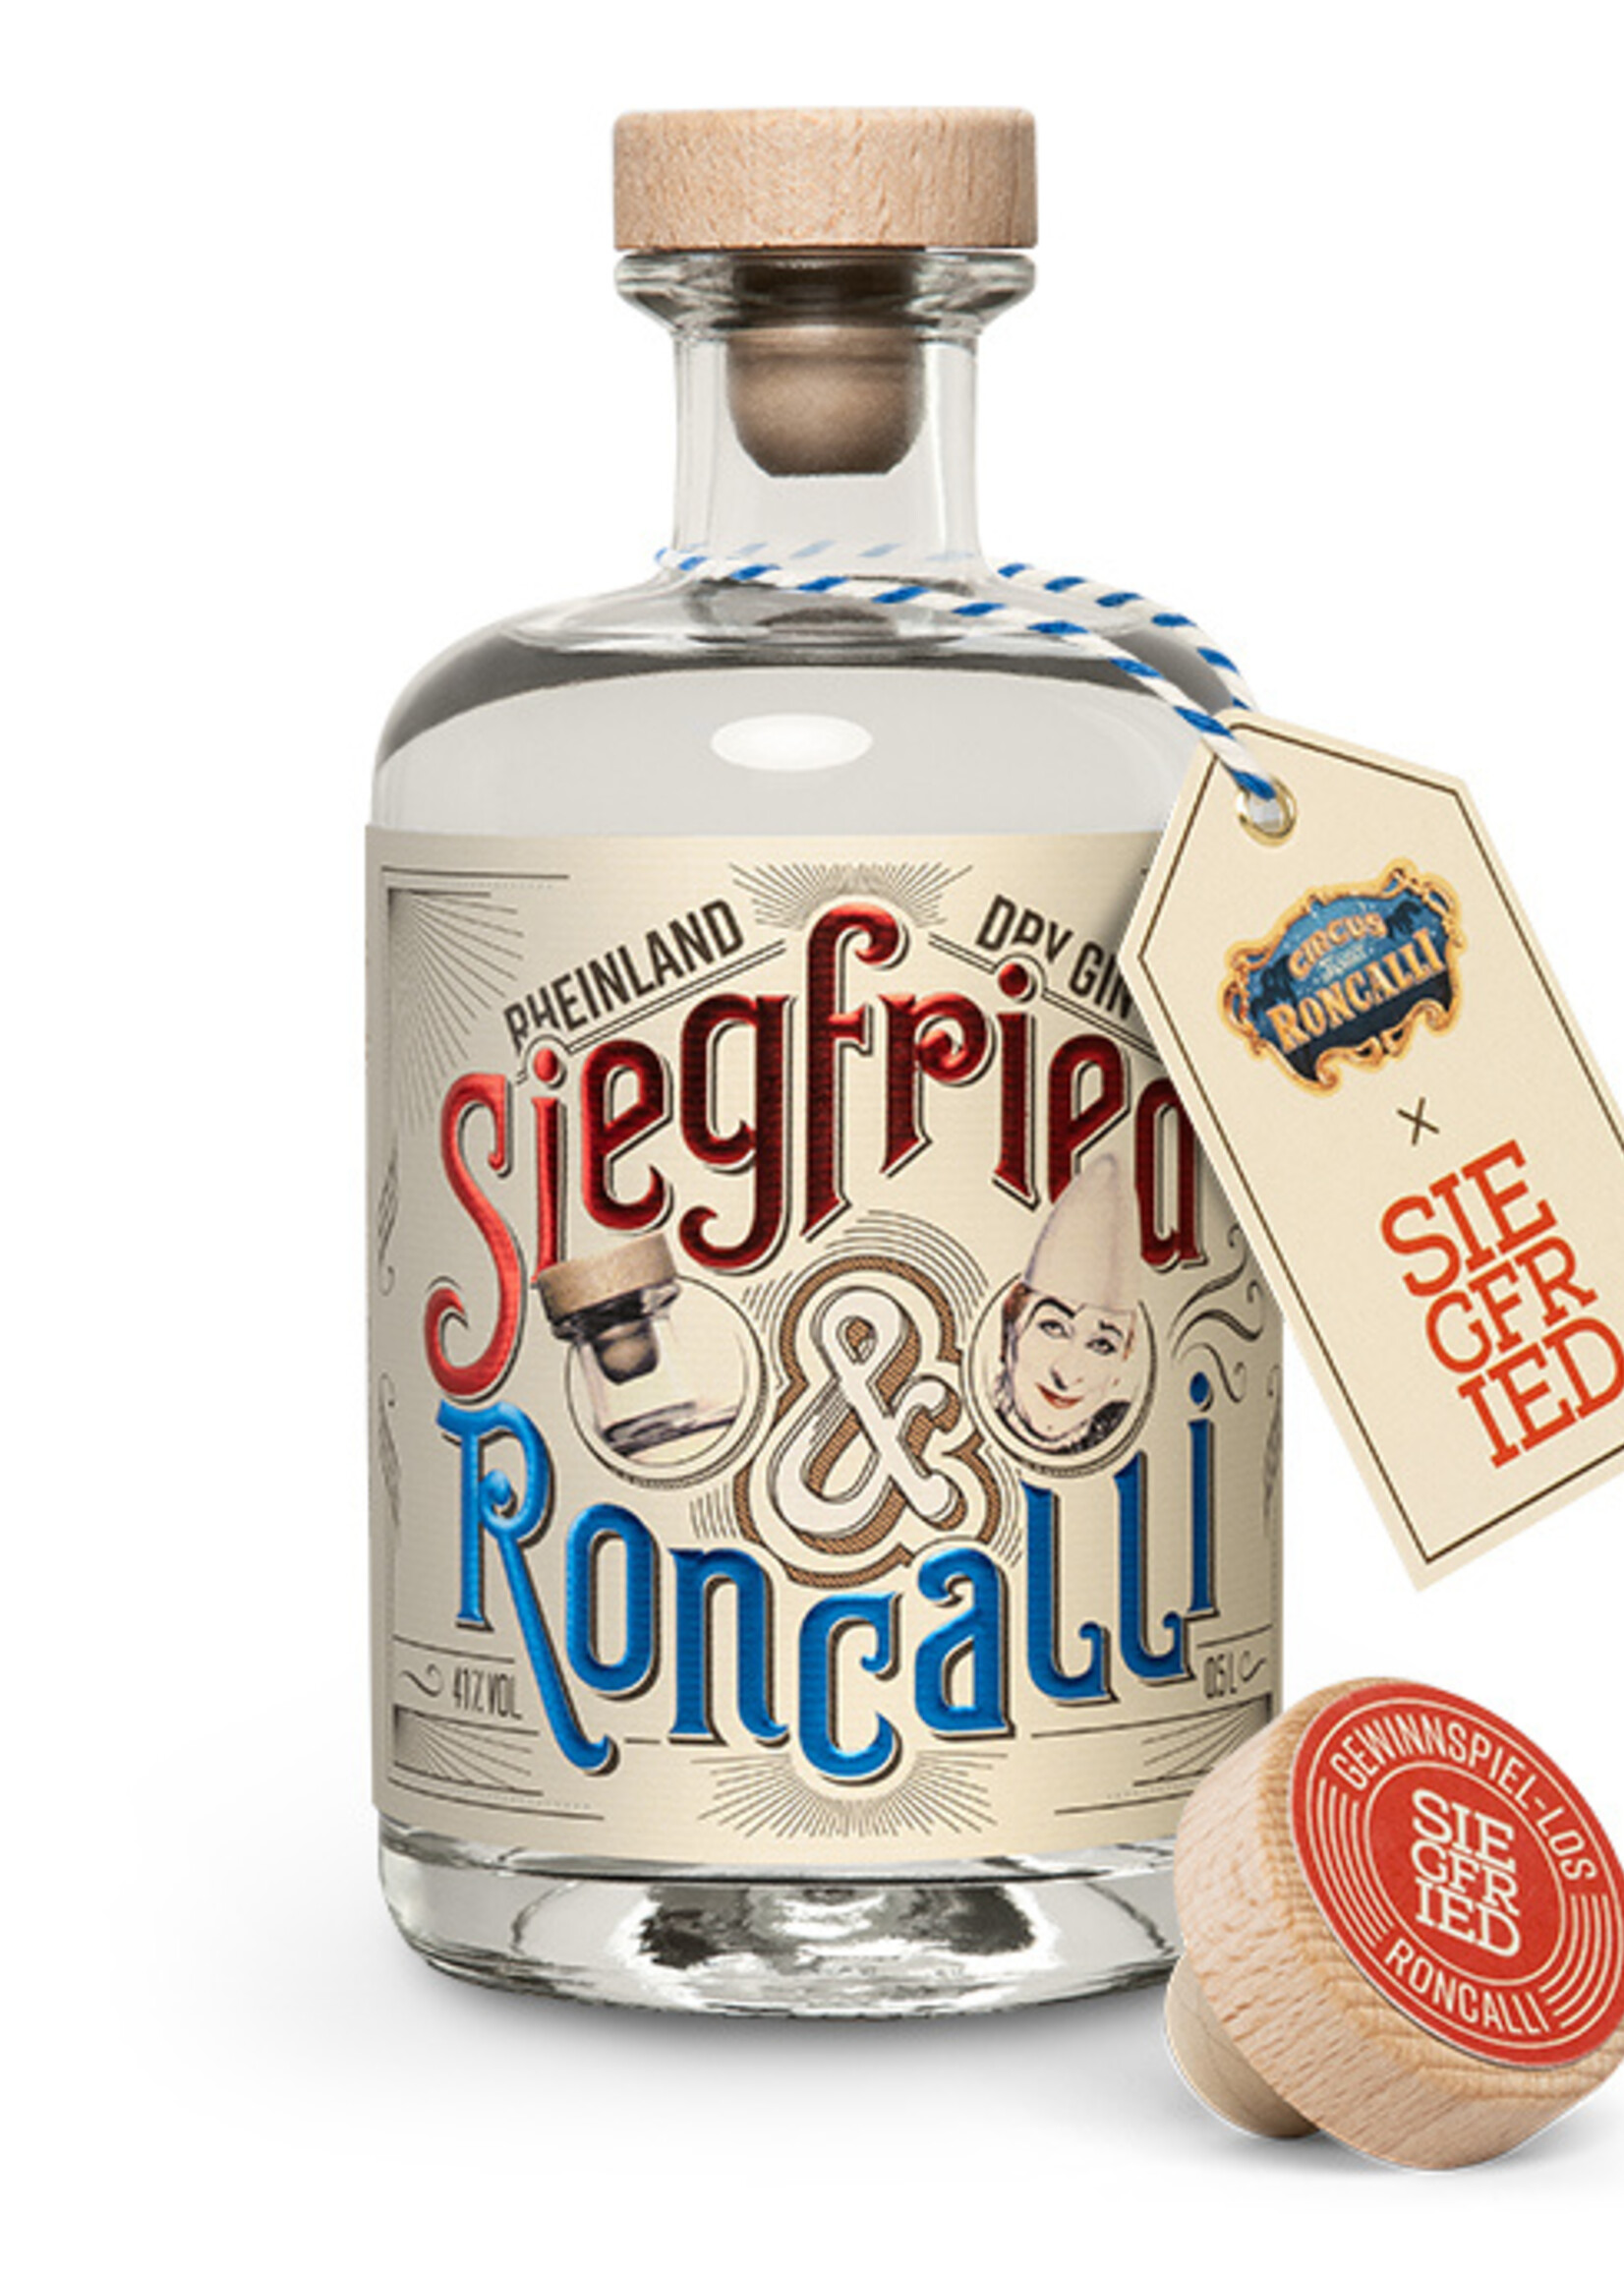 Siegfried Rheinland Dry GIn 0,5L - Roncalli Edition